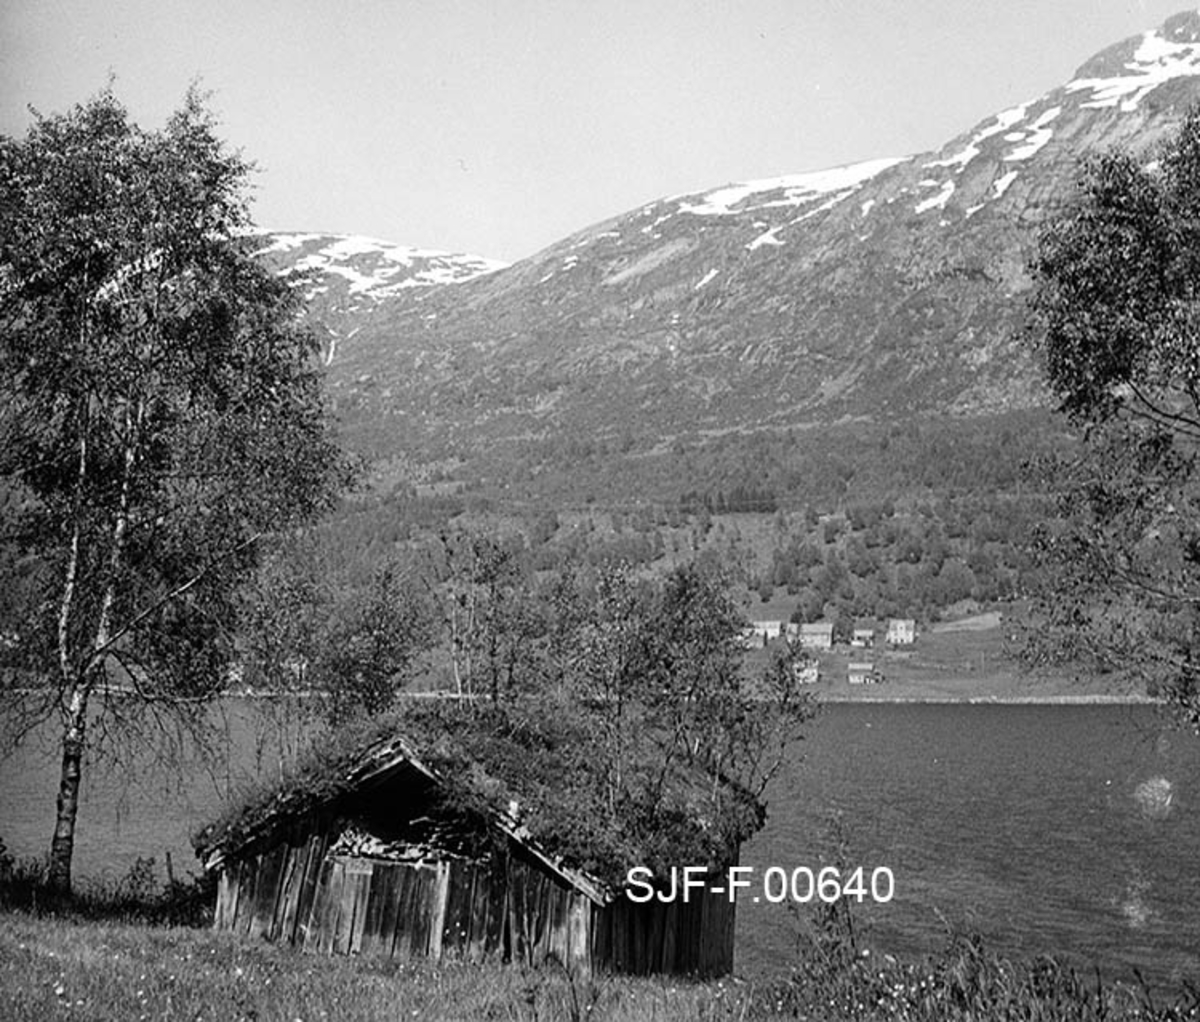 Naustet til Nikolai J. Gjesdal (1889-1973) på Vassenden i Jølster i Sunnfjord i Sogn og Fjordane.  Fotografiet er tatt fra oversida av bygningen, med Jølstervatnet (Jølstravatnet) i bakgrunnen.  Naustet er en umalt, bordkledd stavkonstruksjon med torvtekt sperretak.  Gavlveggen som vender mot fotografen er bordkledd opp til beiten, men åpen i røstet.  Gjennom denne åpningen skimter vi materialer som ble lagret her, både skrårne bjelker og rundvirke i hersestaurformat.  På taket vokste det en god del lauvtrær da fotografiet ble tatt, noe som vel tyder på at det var ei stund siden taket ble lagt om da dette fotografiet ble tatt i 1967.  I bakgrunnen, på motsatt side av Jølstervatnet skimtes fjell (Gravsfjellet [851 m. o. h. ] og Tindefjellet [1083 m. o. h. ]) med snøstriper på toppen, til tross for at fotografiet åpenbart er tatt i sommersesongen. 

Jølsternaustet er 790 centimeter langt og 456 centimeter bredt og har følgelig ei grunnflate på 36 kvadratmeter.  På gavlen mot vassdraget er rafthøyden 217 og mønehøyden 365 centimeter.  På den bakre eller vestre gavlen er rafthøyden 125 og mønehøyden 258 centimeter. 